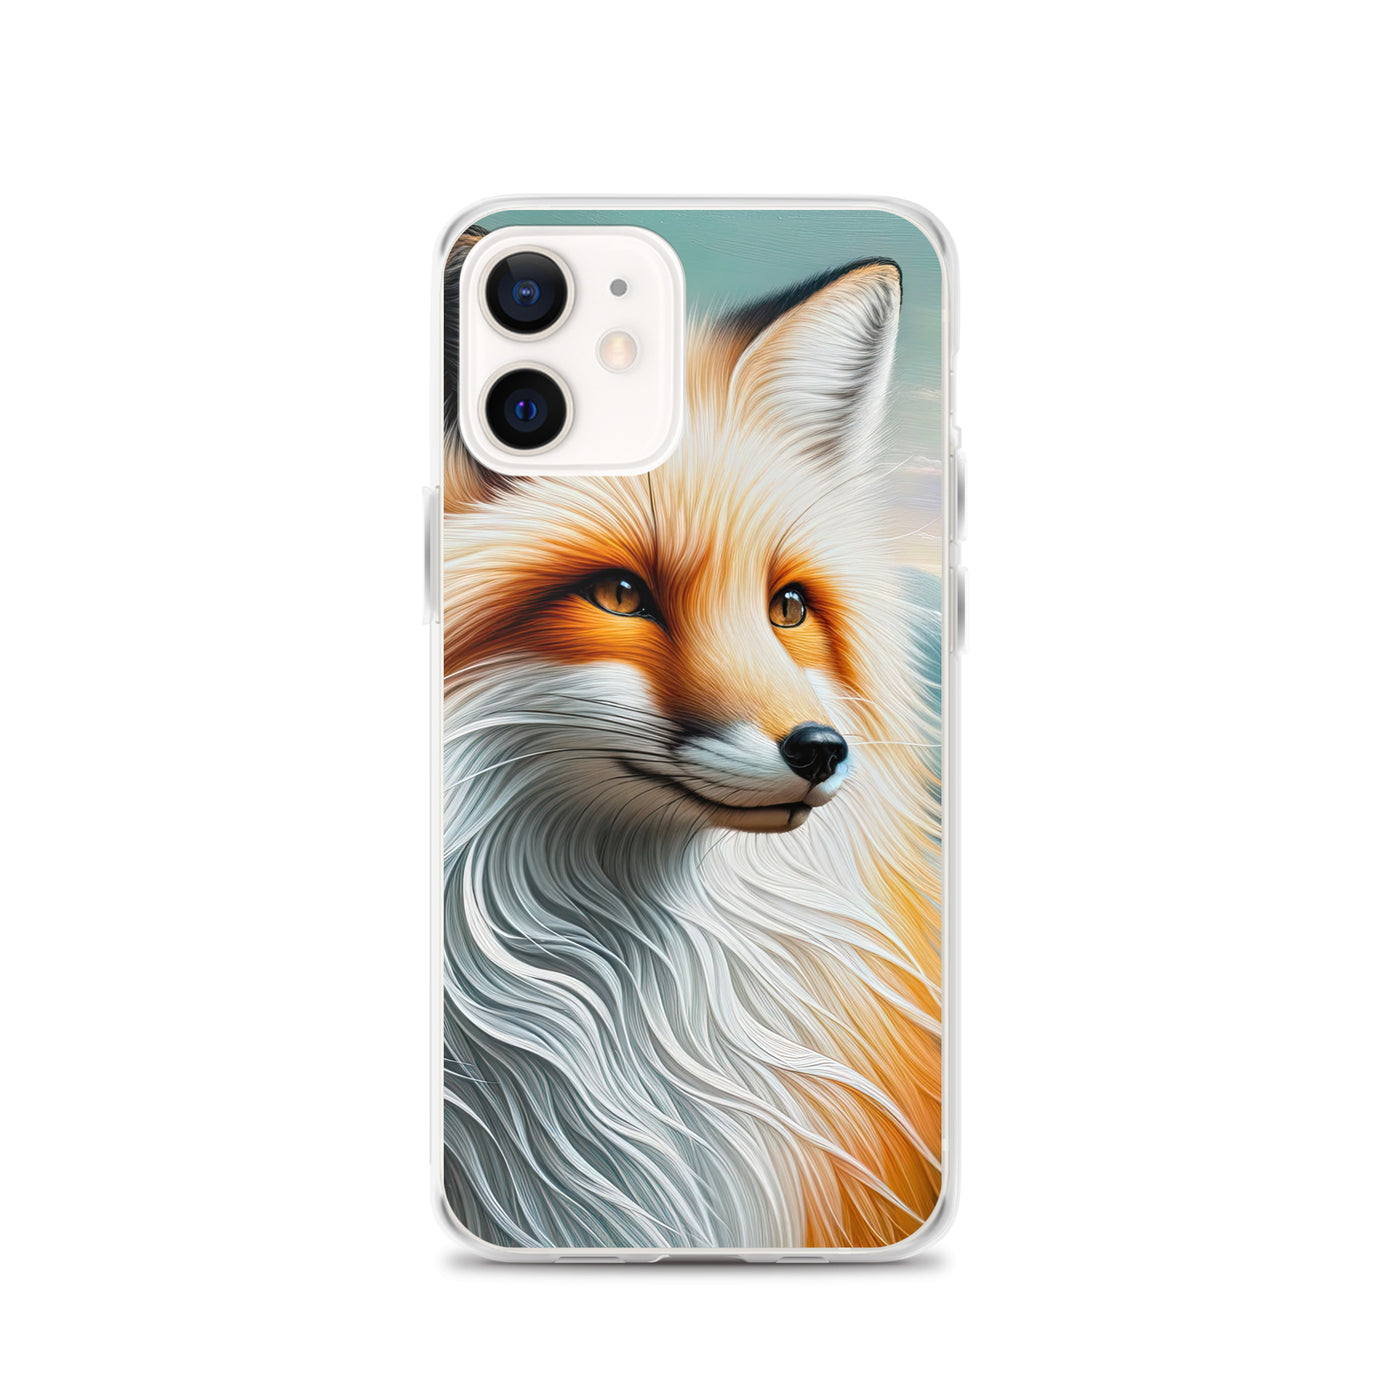 Ölgemälde eines anmutigen, intelligent blickenden Fuchses in Orange-Weiß - iPhone Schutzhülle (durchsichtig) camping xxx yyy zzz iPhone 12